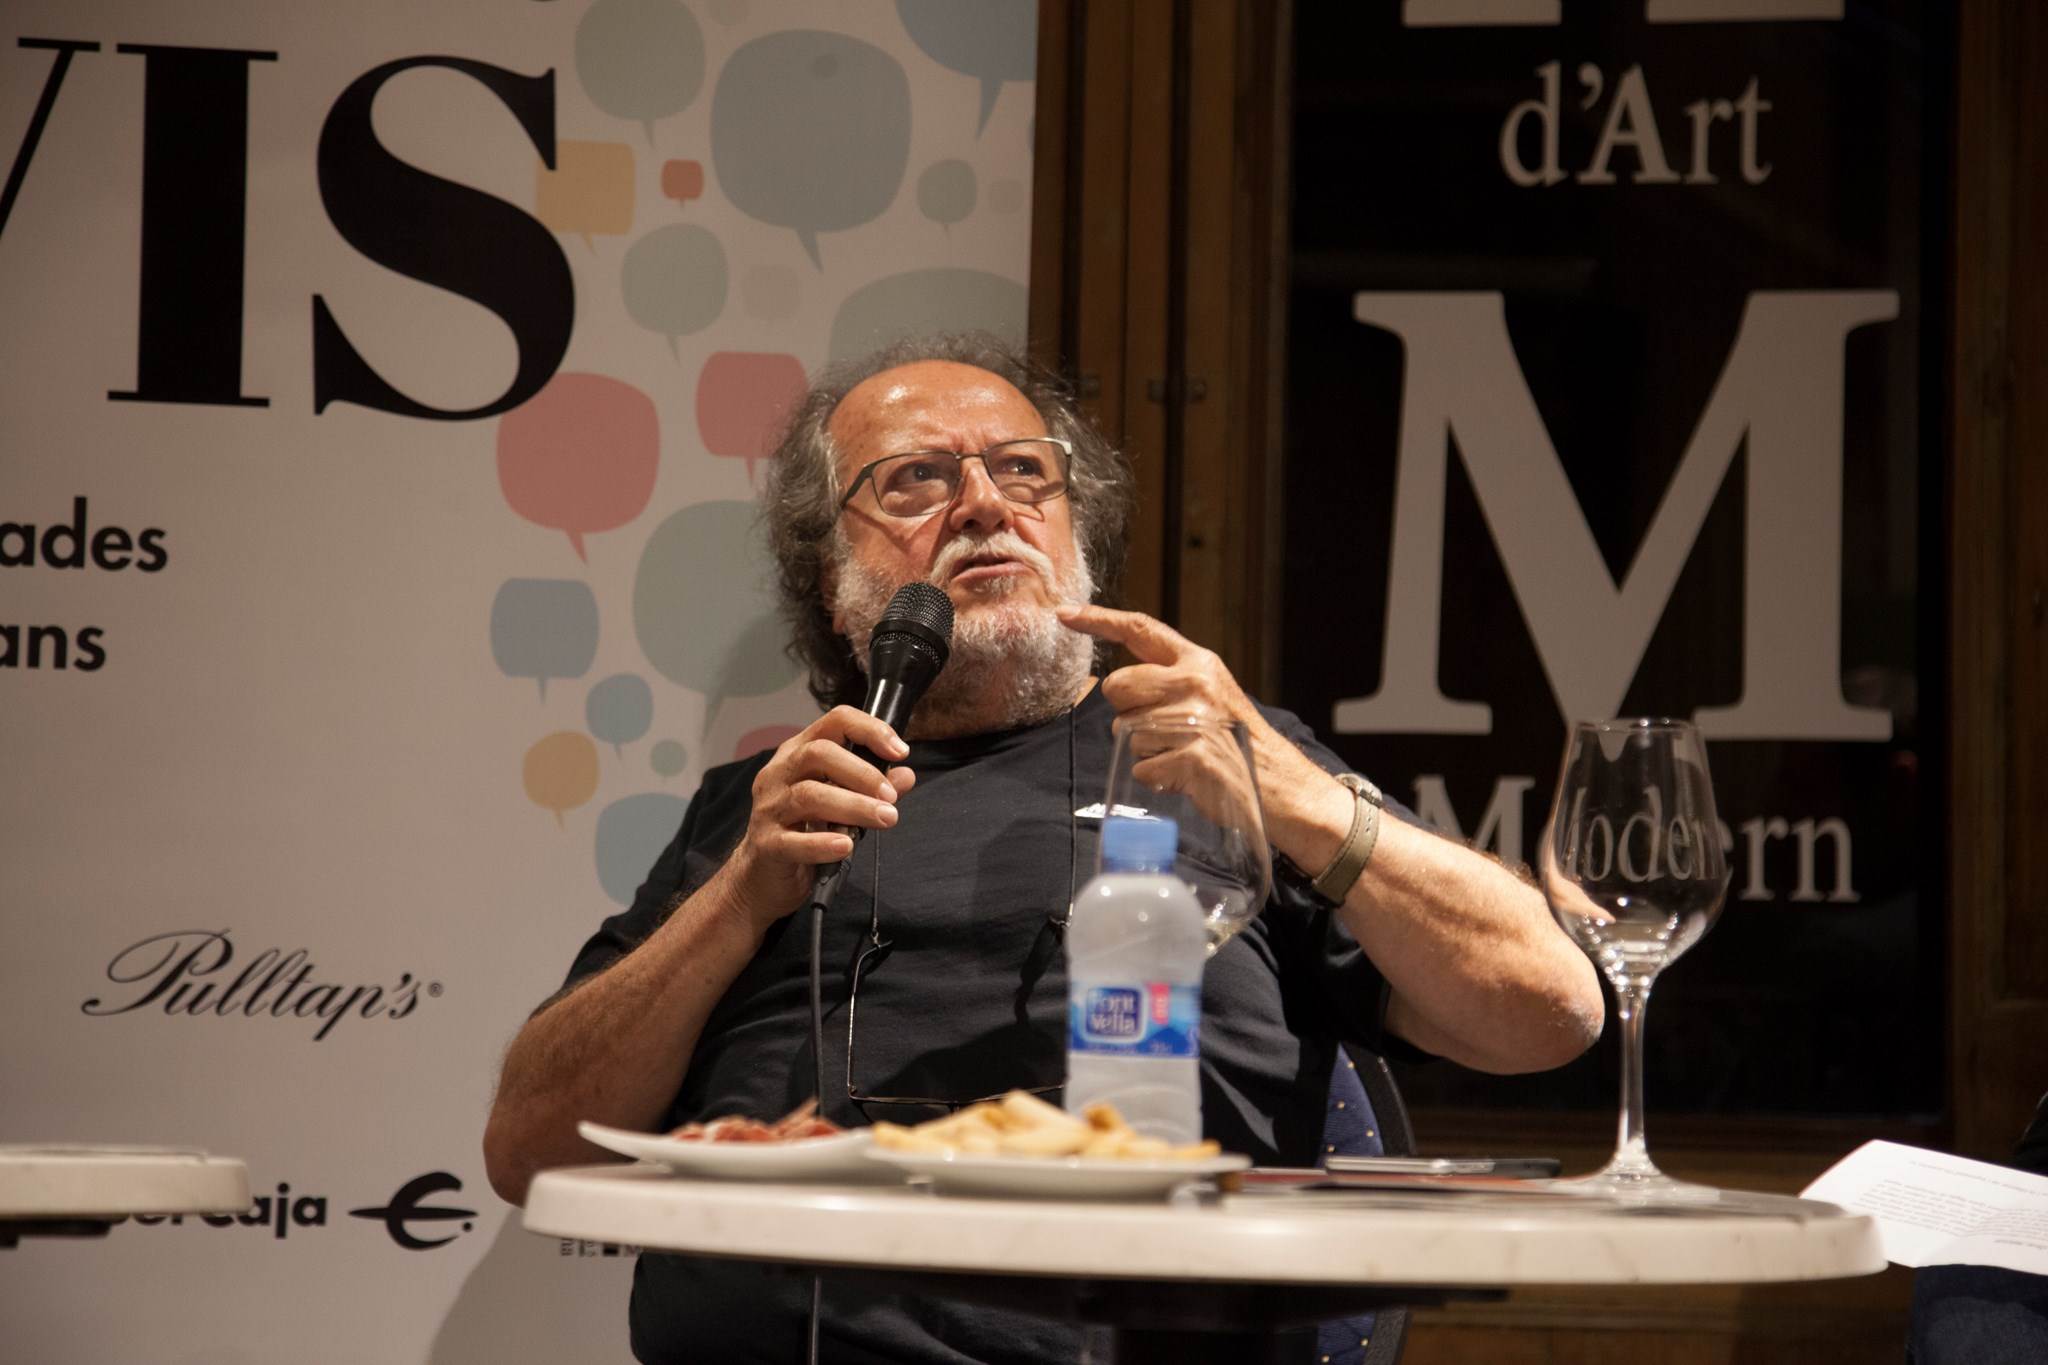   #VisàVis: Oscar Nebreda i el celler Miquel Pons